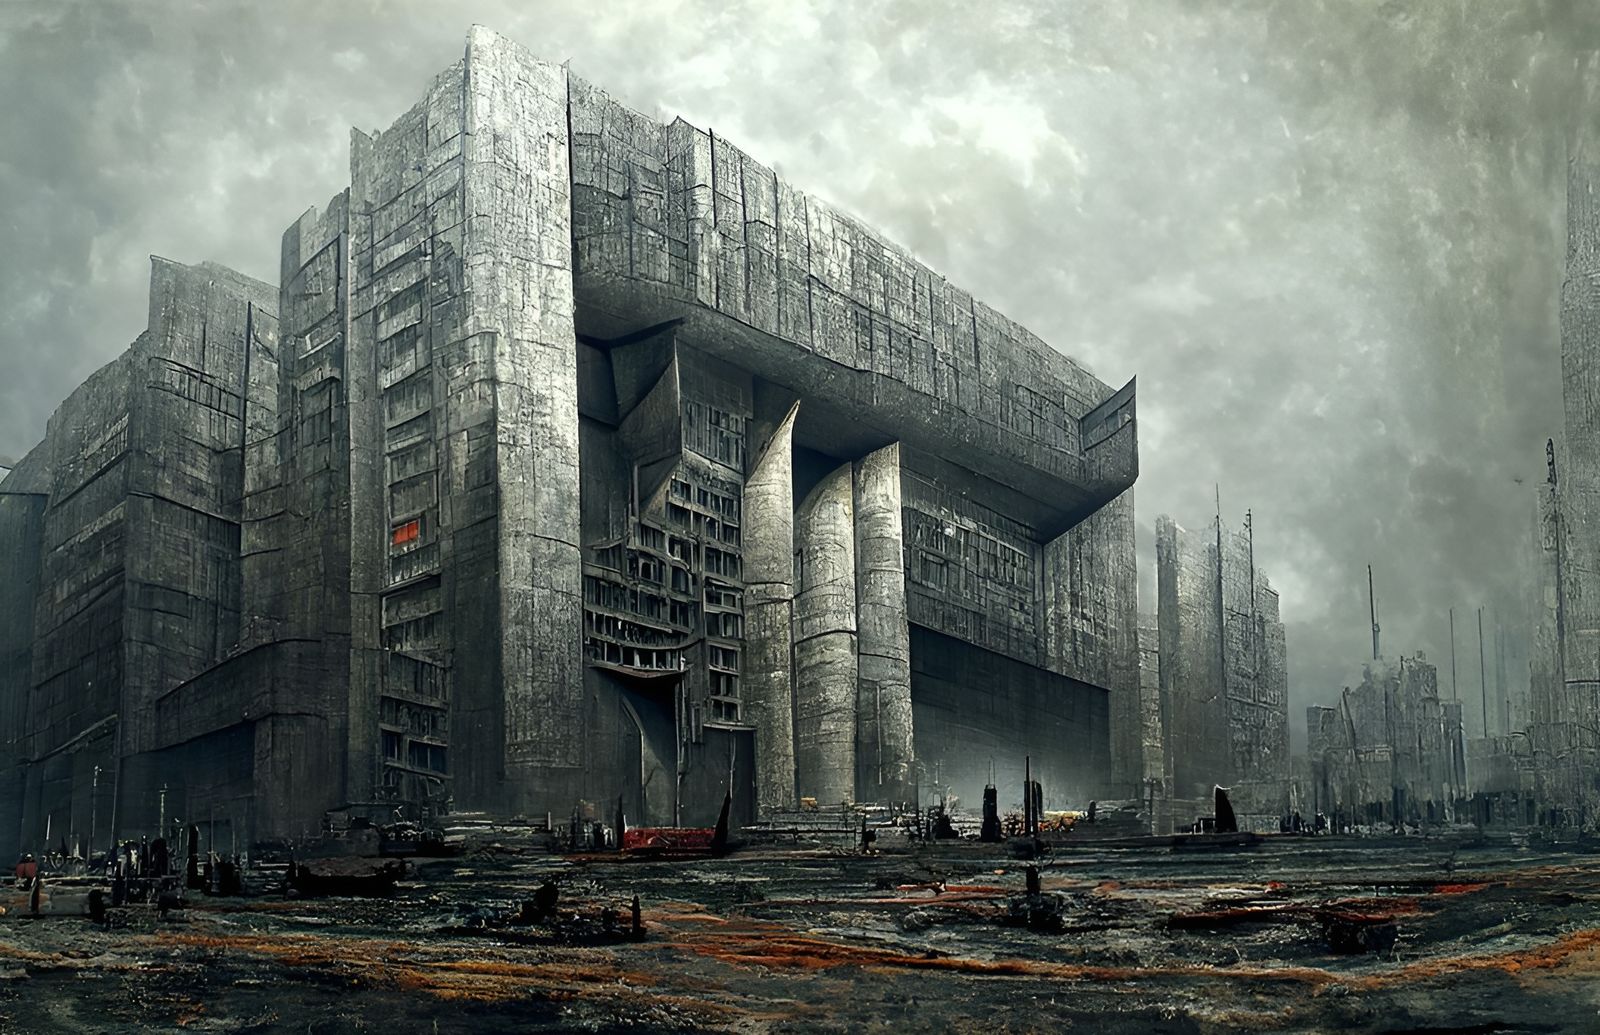 Dystopian Facility